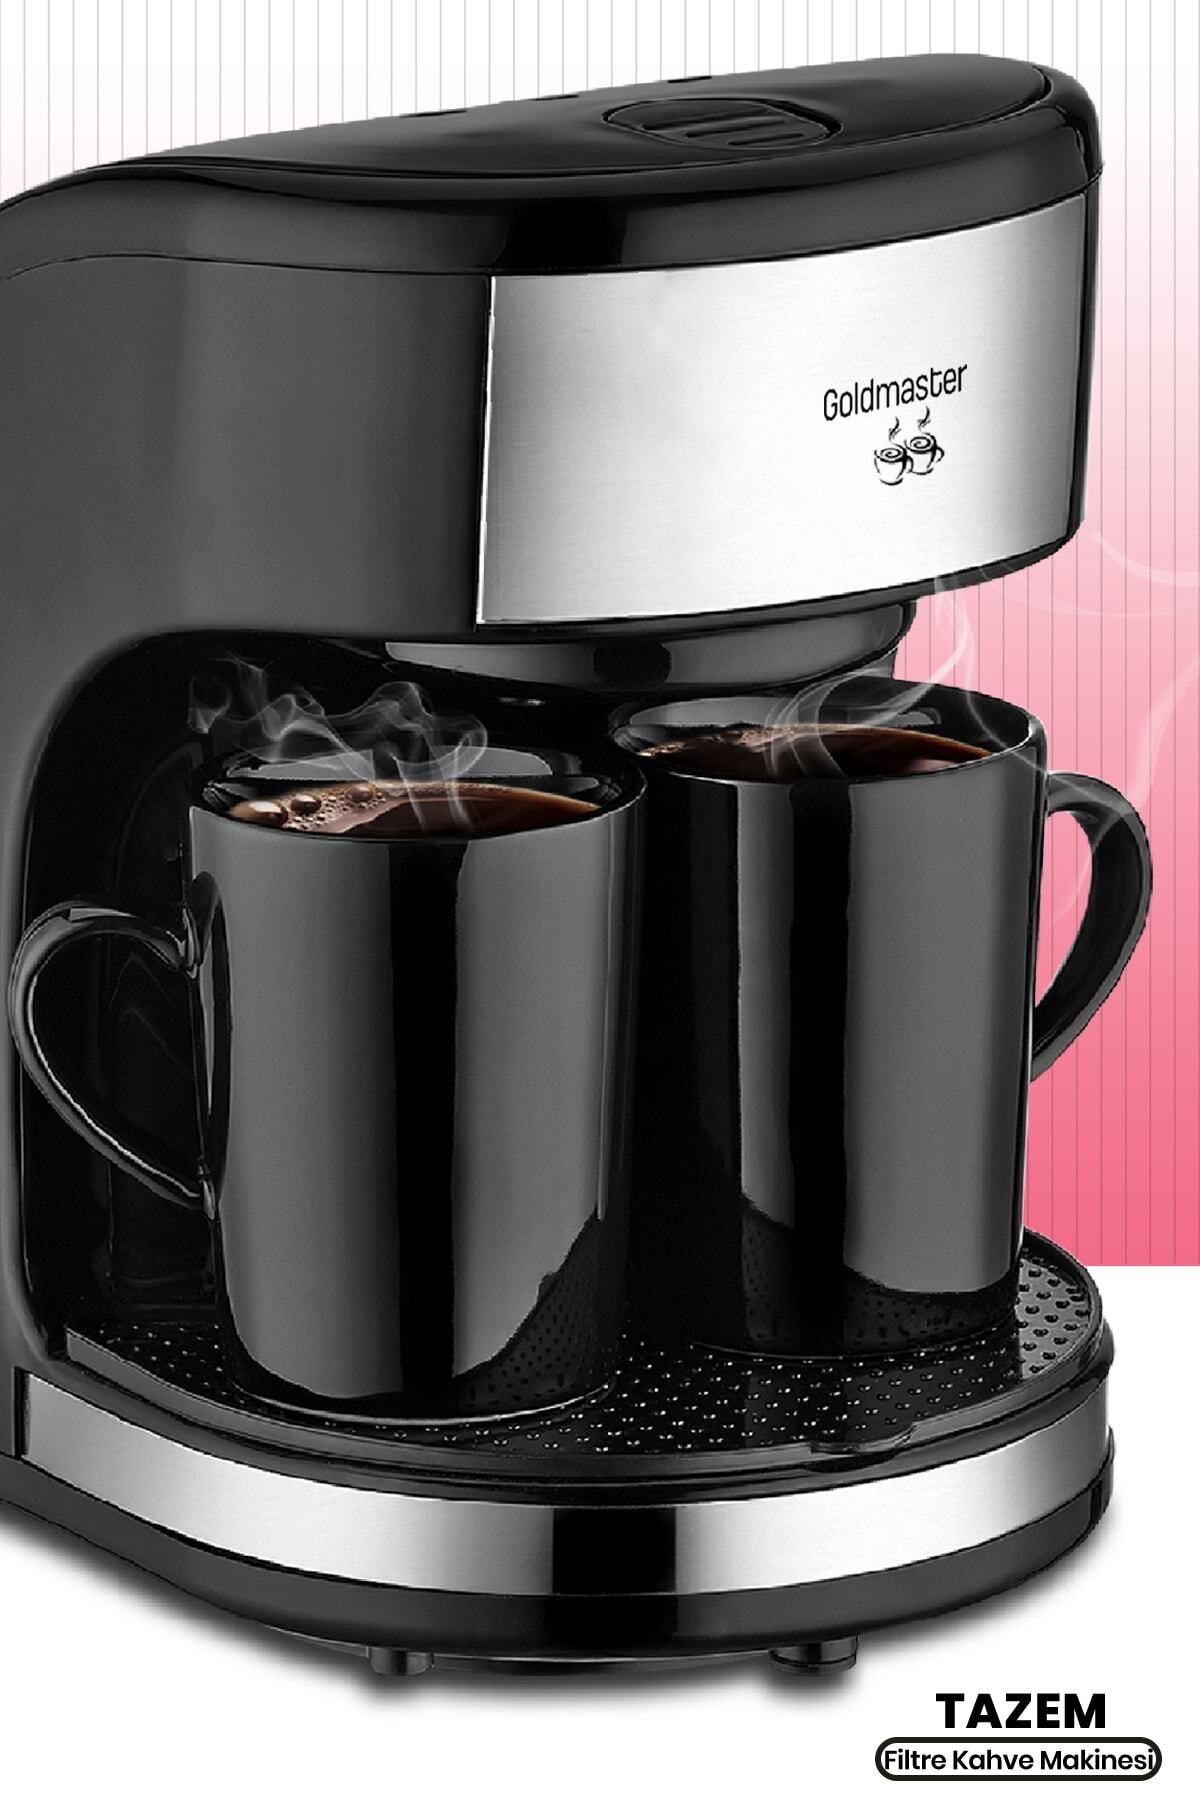 GoldMaster Tazem Paslanmaz Çelik Yıkanabilir Filtreli Çift Kupalı Filtre Kahve Makinesi